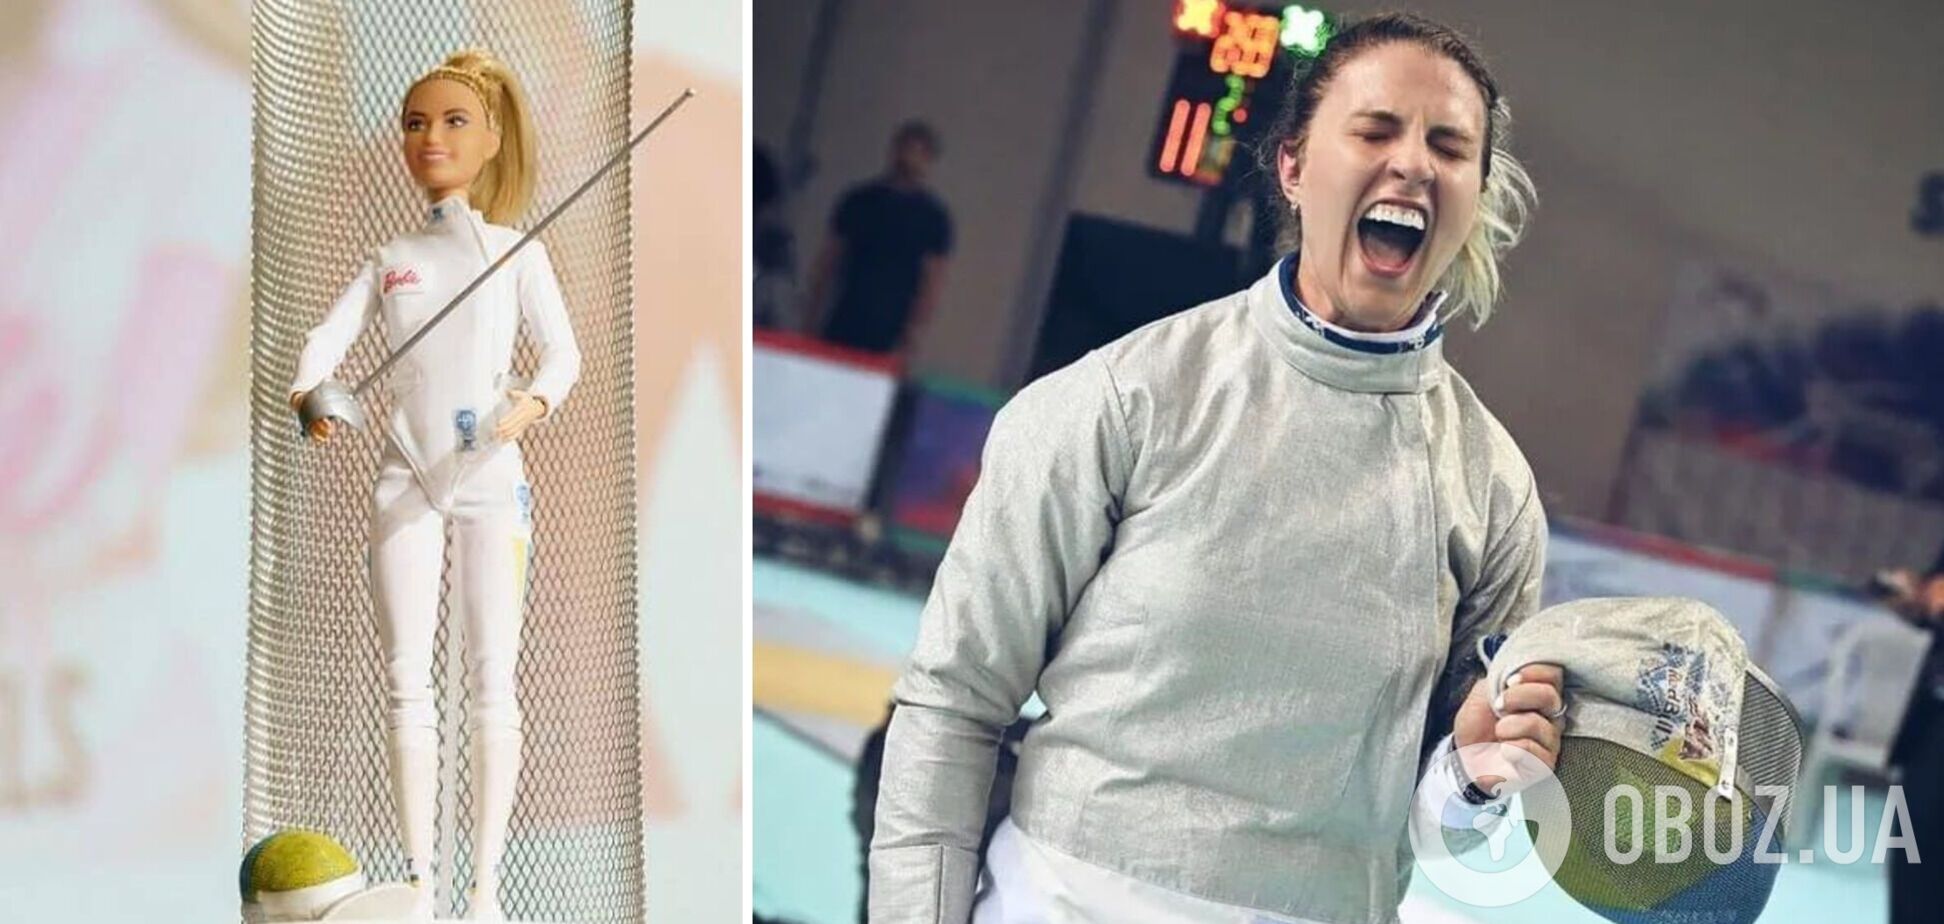 Харлан, яка поставила на місце росіянку на змаганнях, була прототипом Барбі-фехтувальниці: як виглядає лялька